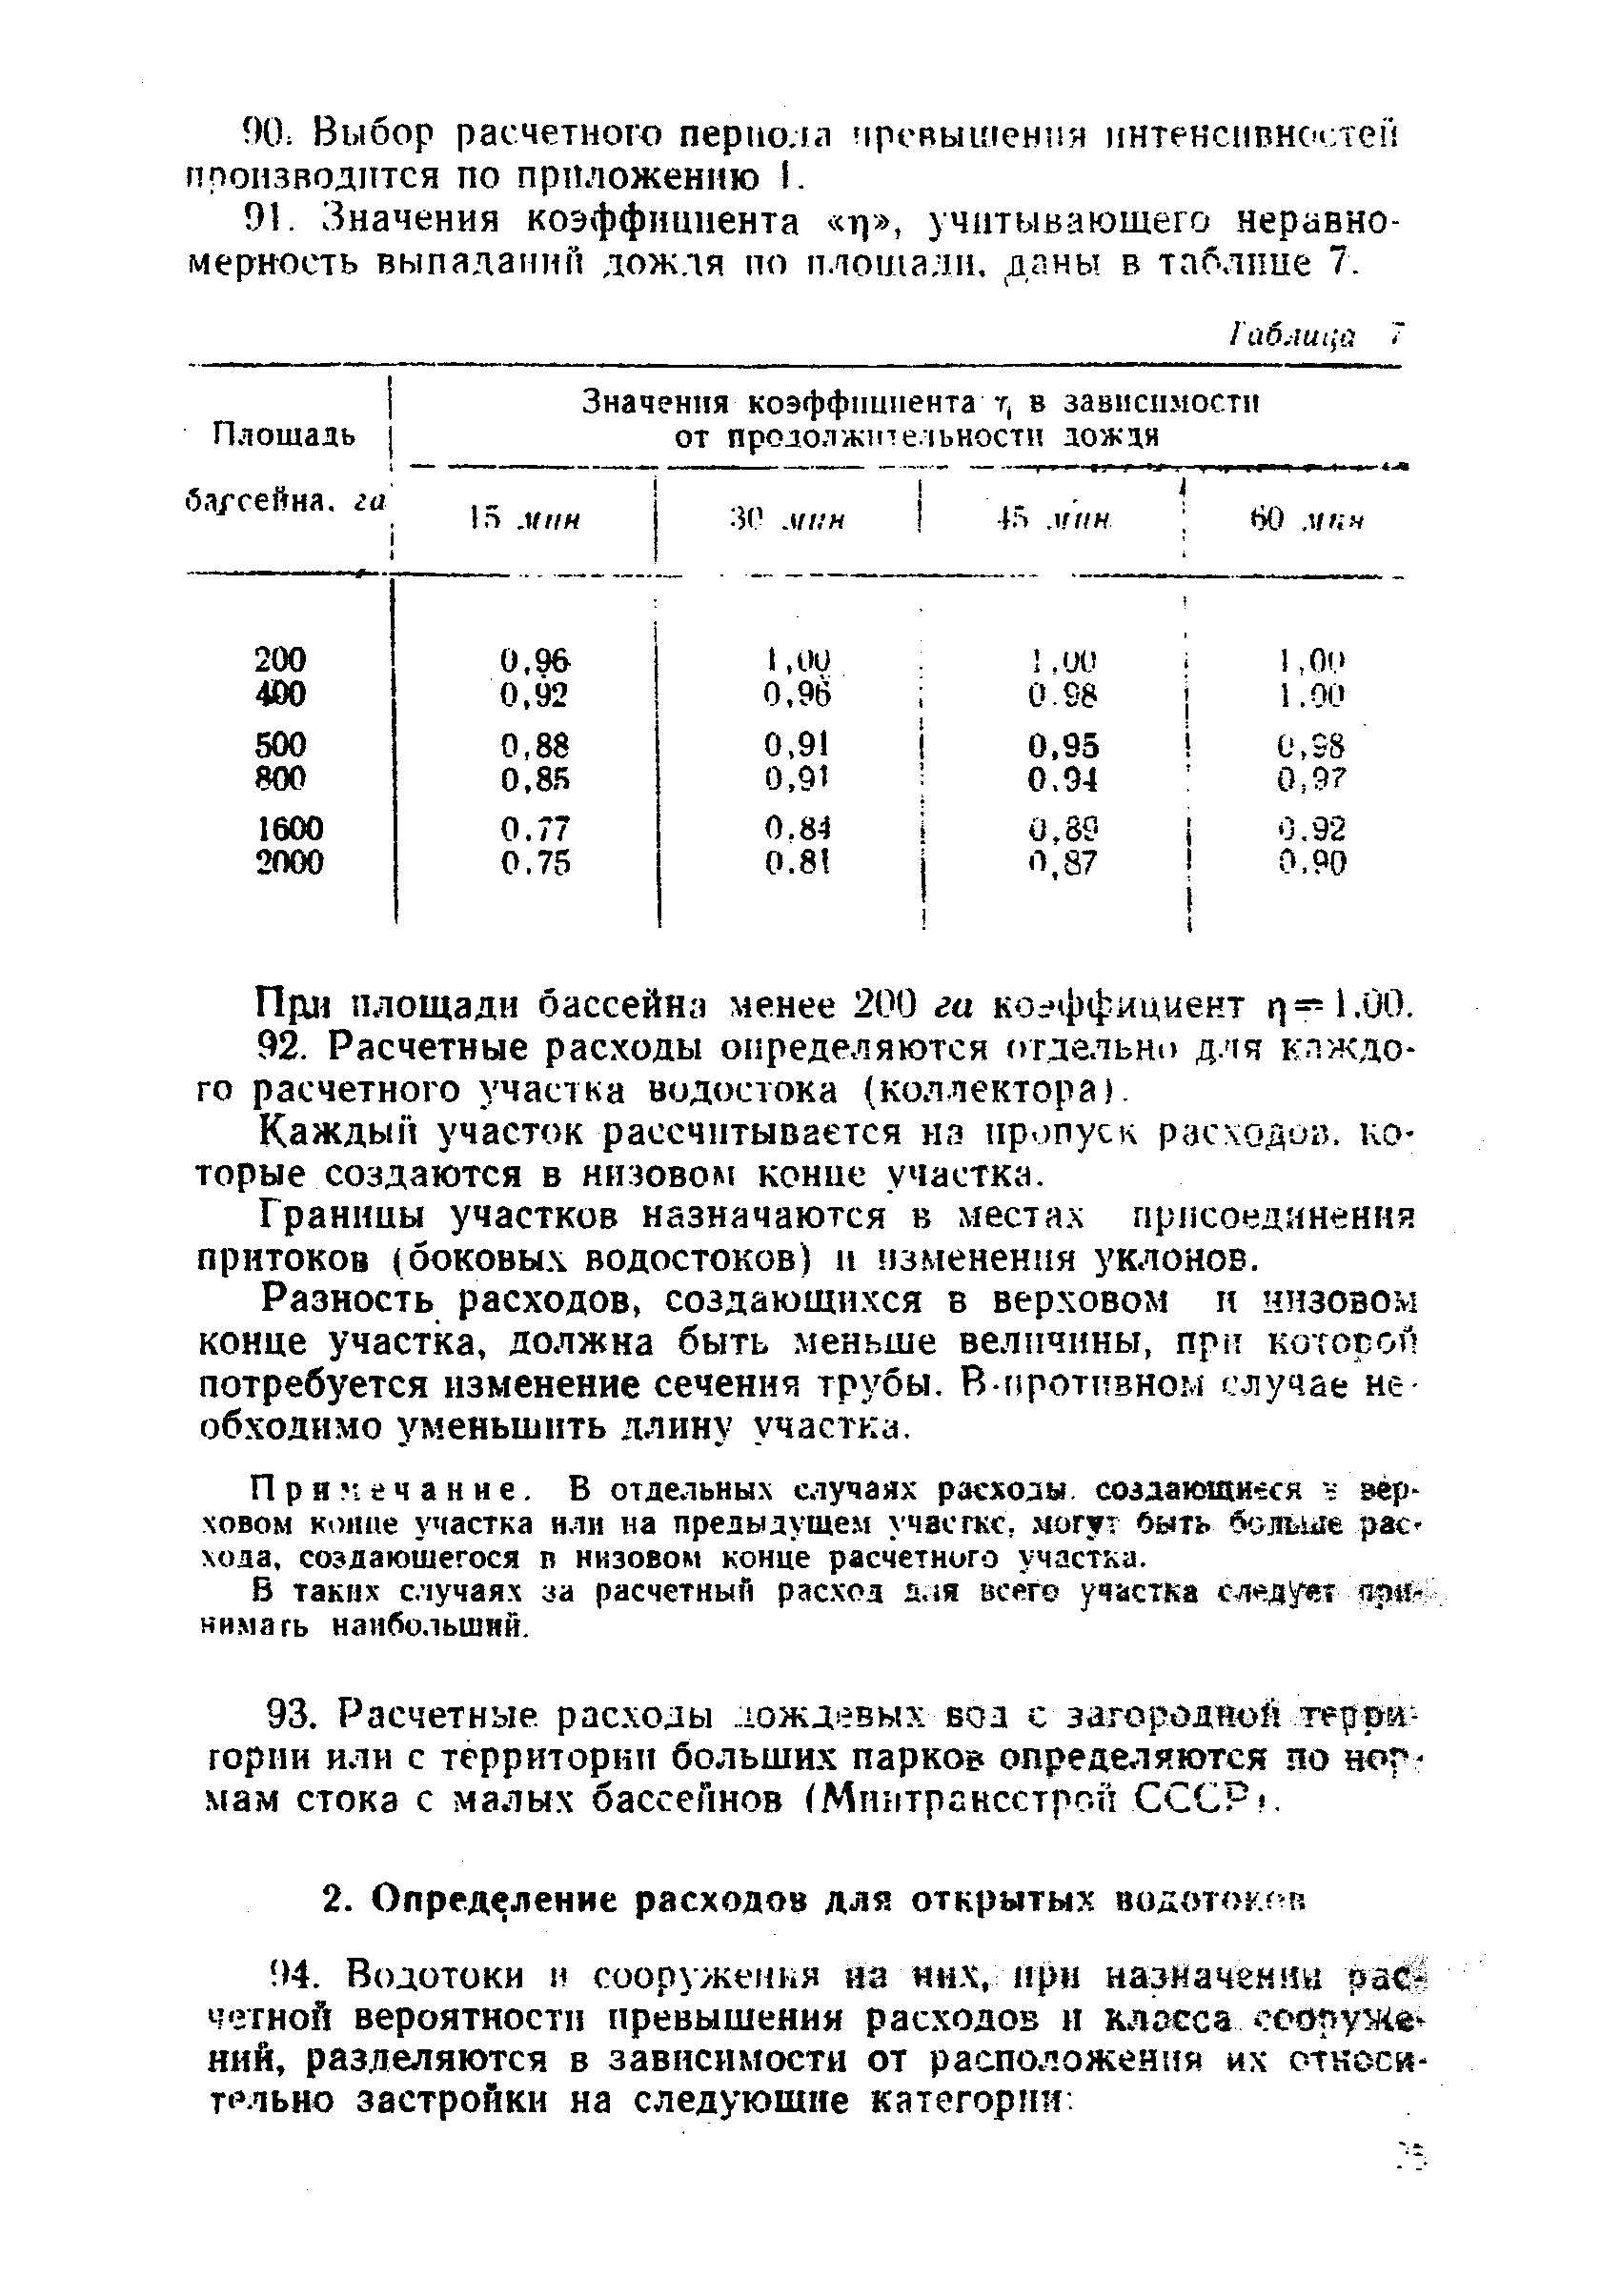 ВСН 9-63